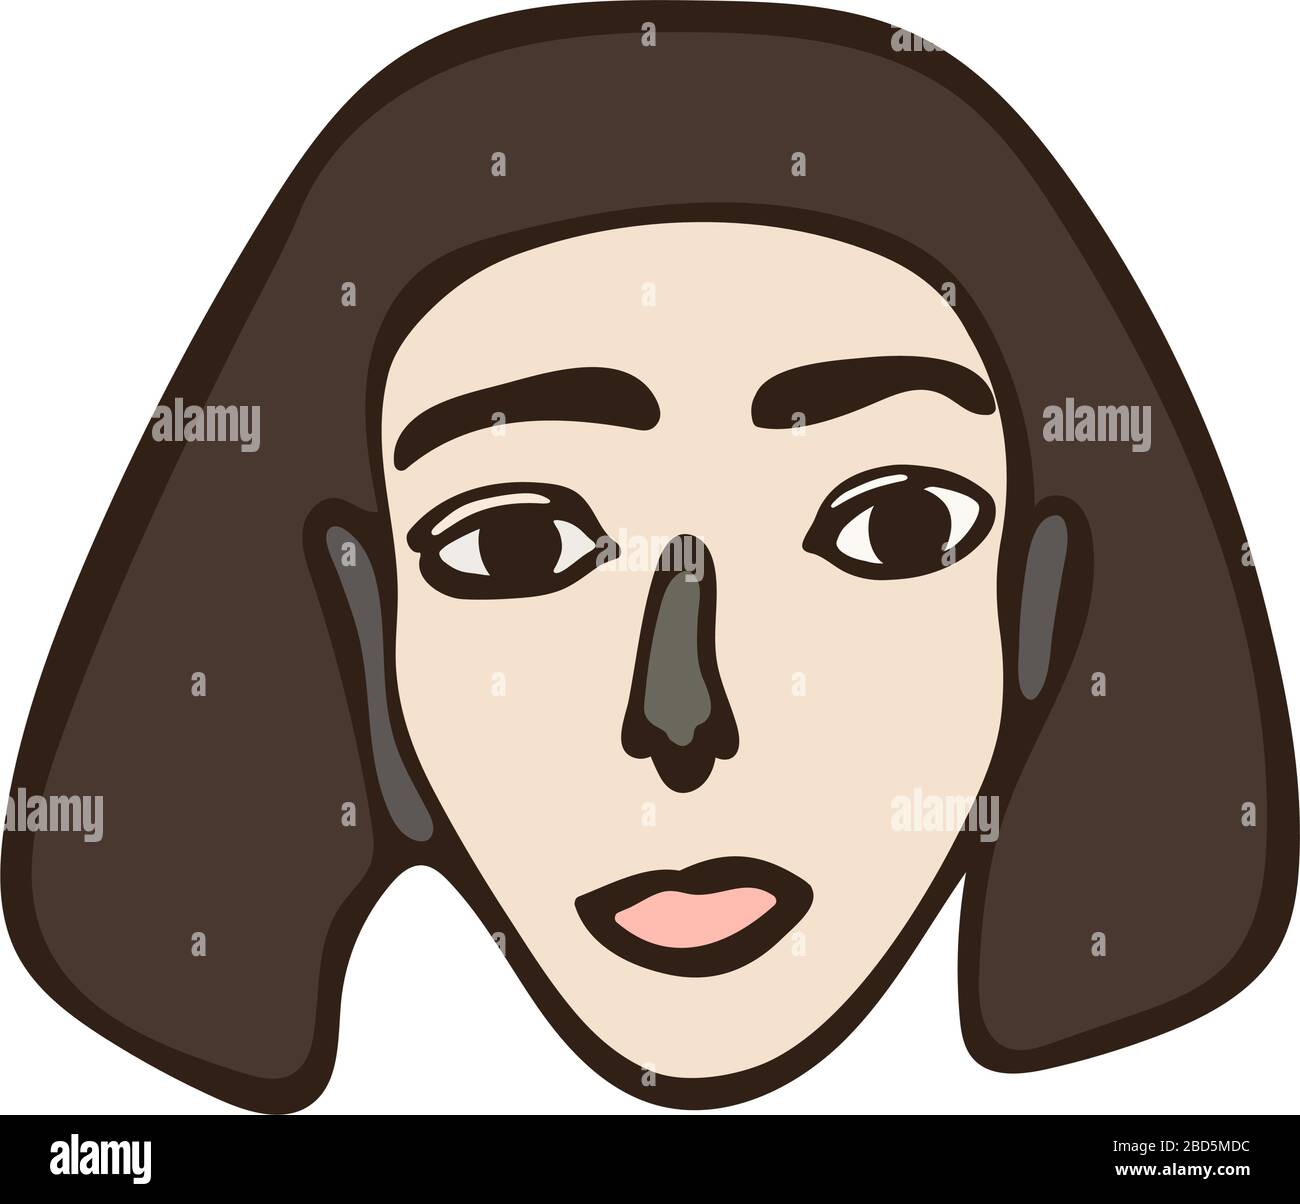 Portrait femelle minimaliste isolé linéaire. Fille à poil brun, visage blanc avec yeux sombres. Caractéristiques du visage simples. Graphique primitif scandinave Illustration de Vecteur